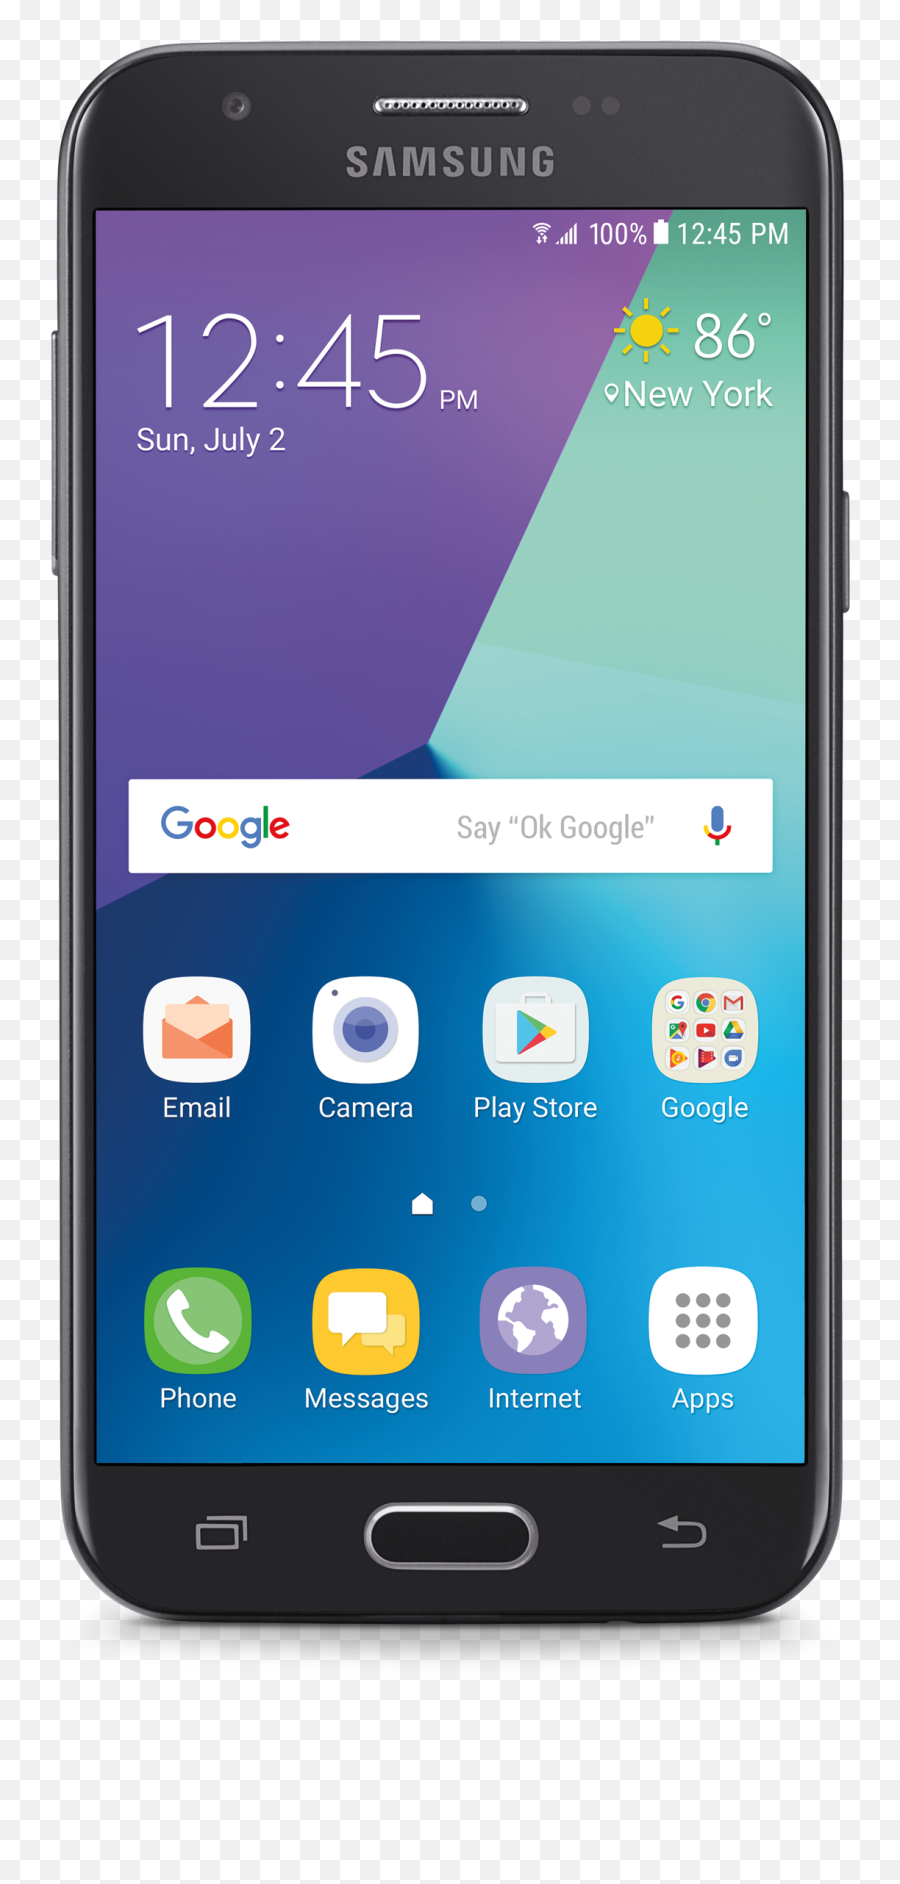 Consumer Cellular Samsung Galaxy J3 - Samsung J7 V Emoji,How To Add Emojis To A Samsung Galaxy J3 2017